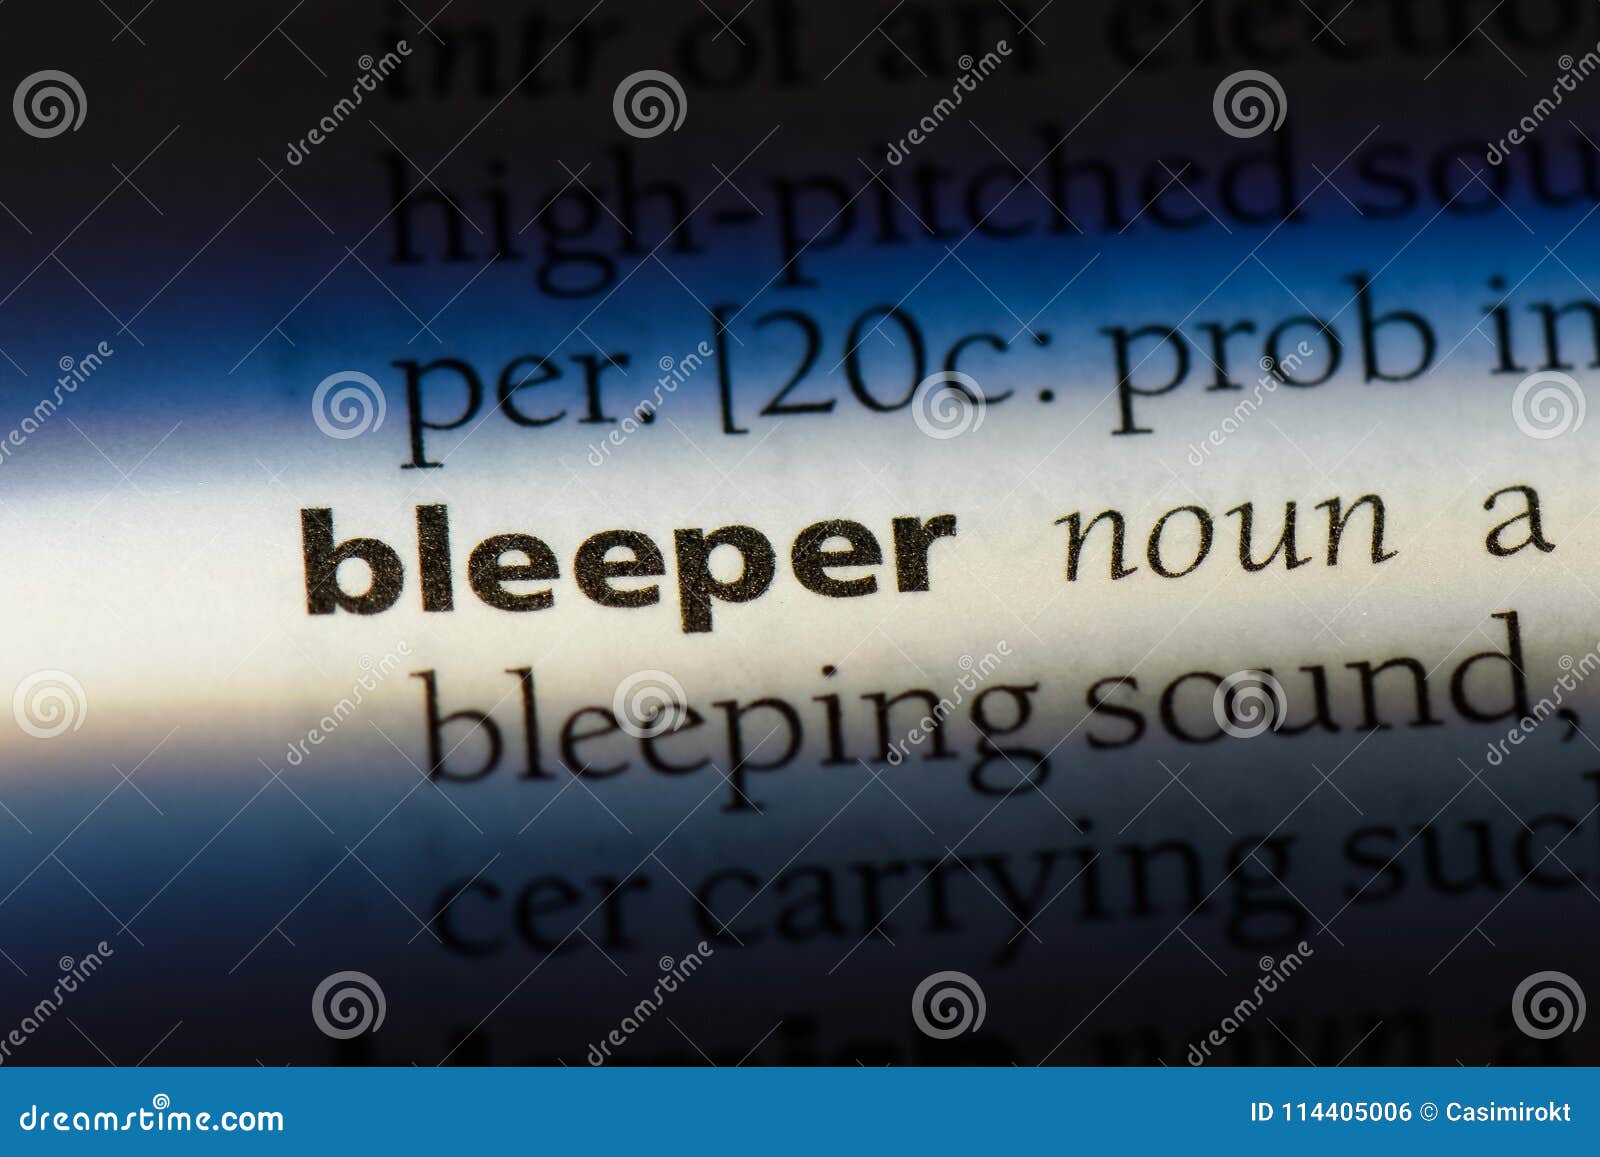 bleeper